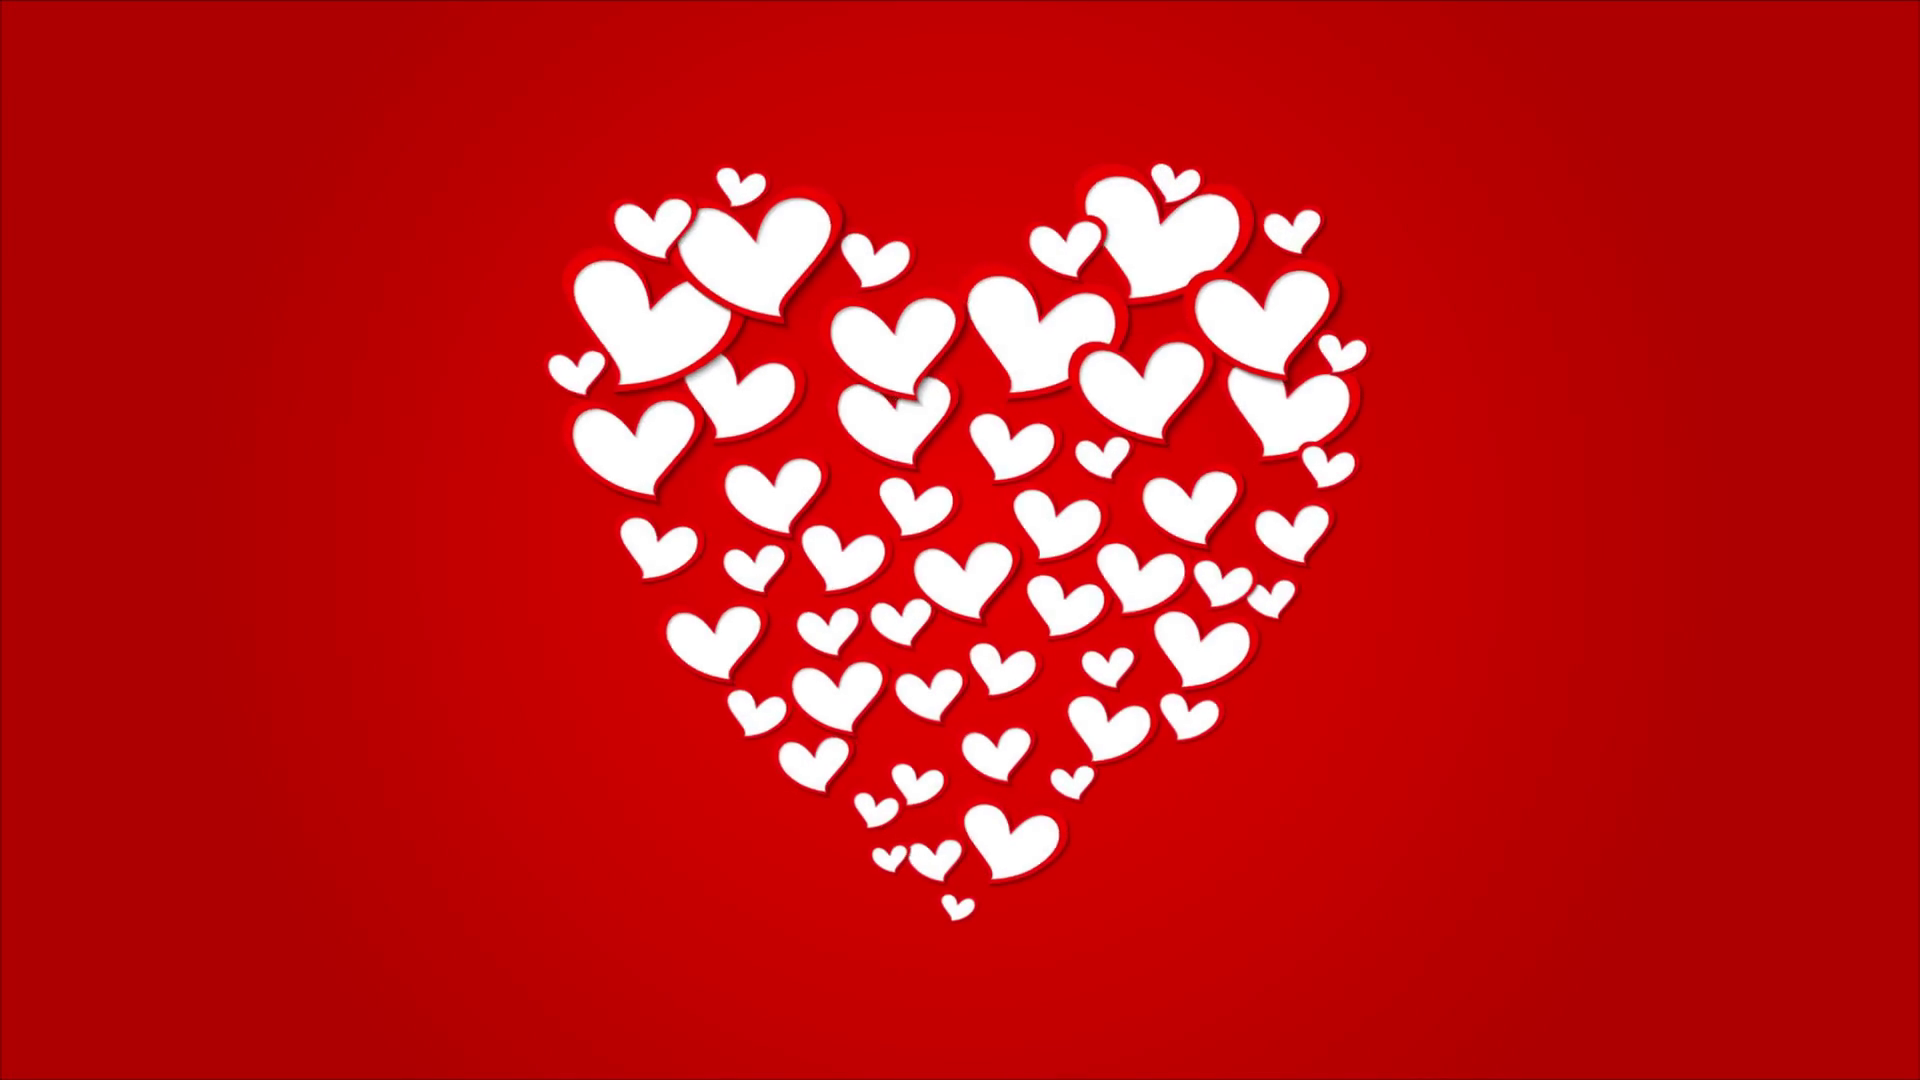 사랑 애니메이션 벽지,심장,빨간,발렌타인 데이,사랑,심장